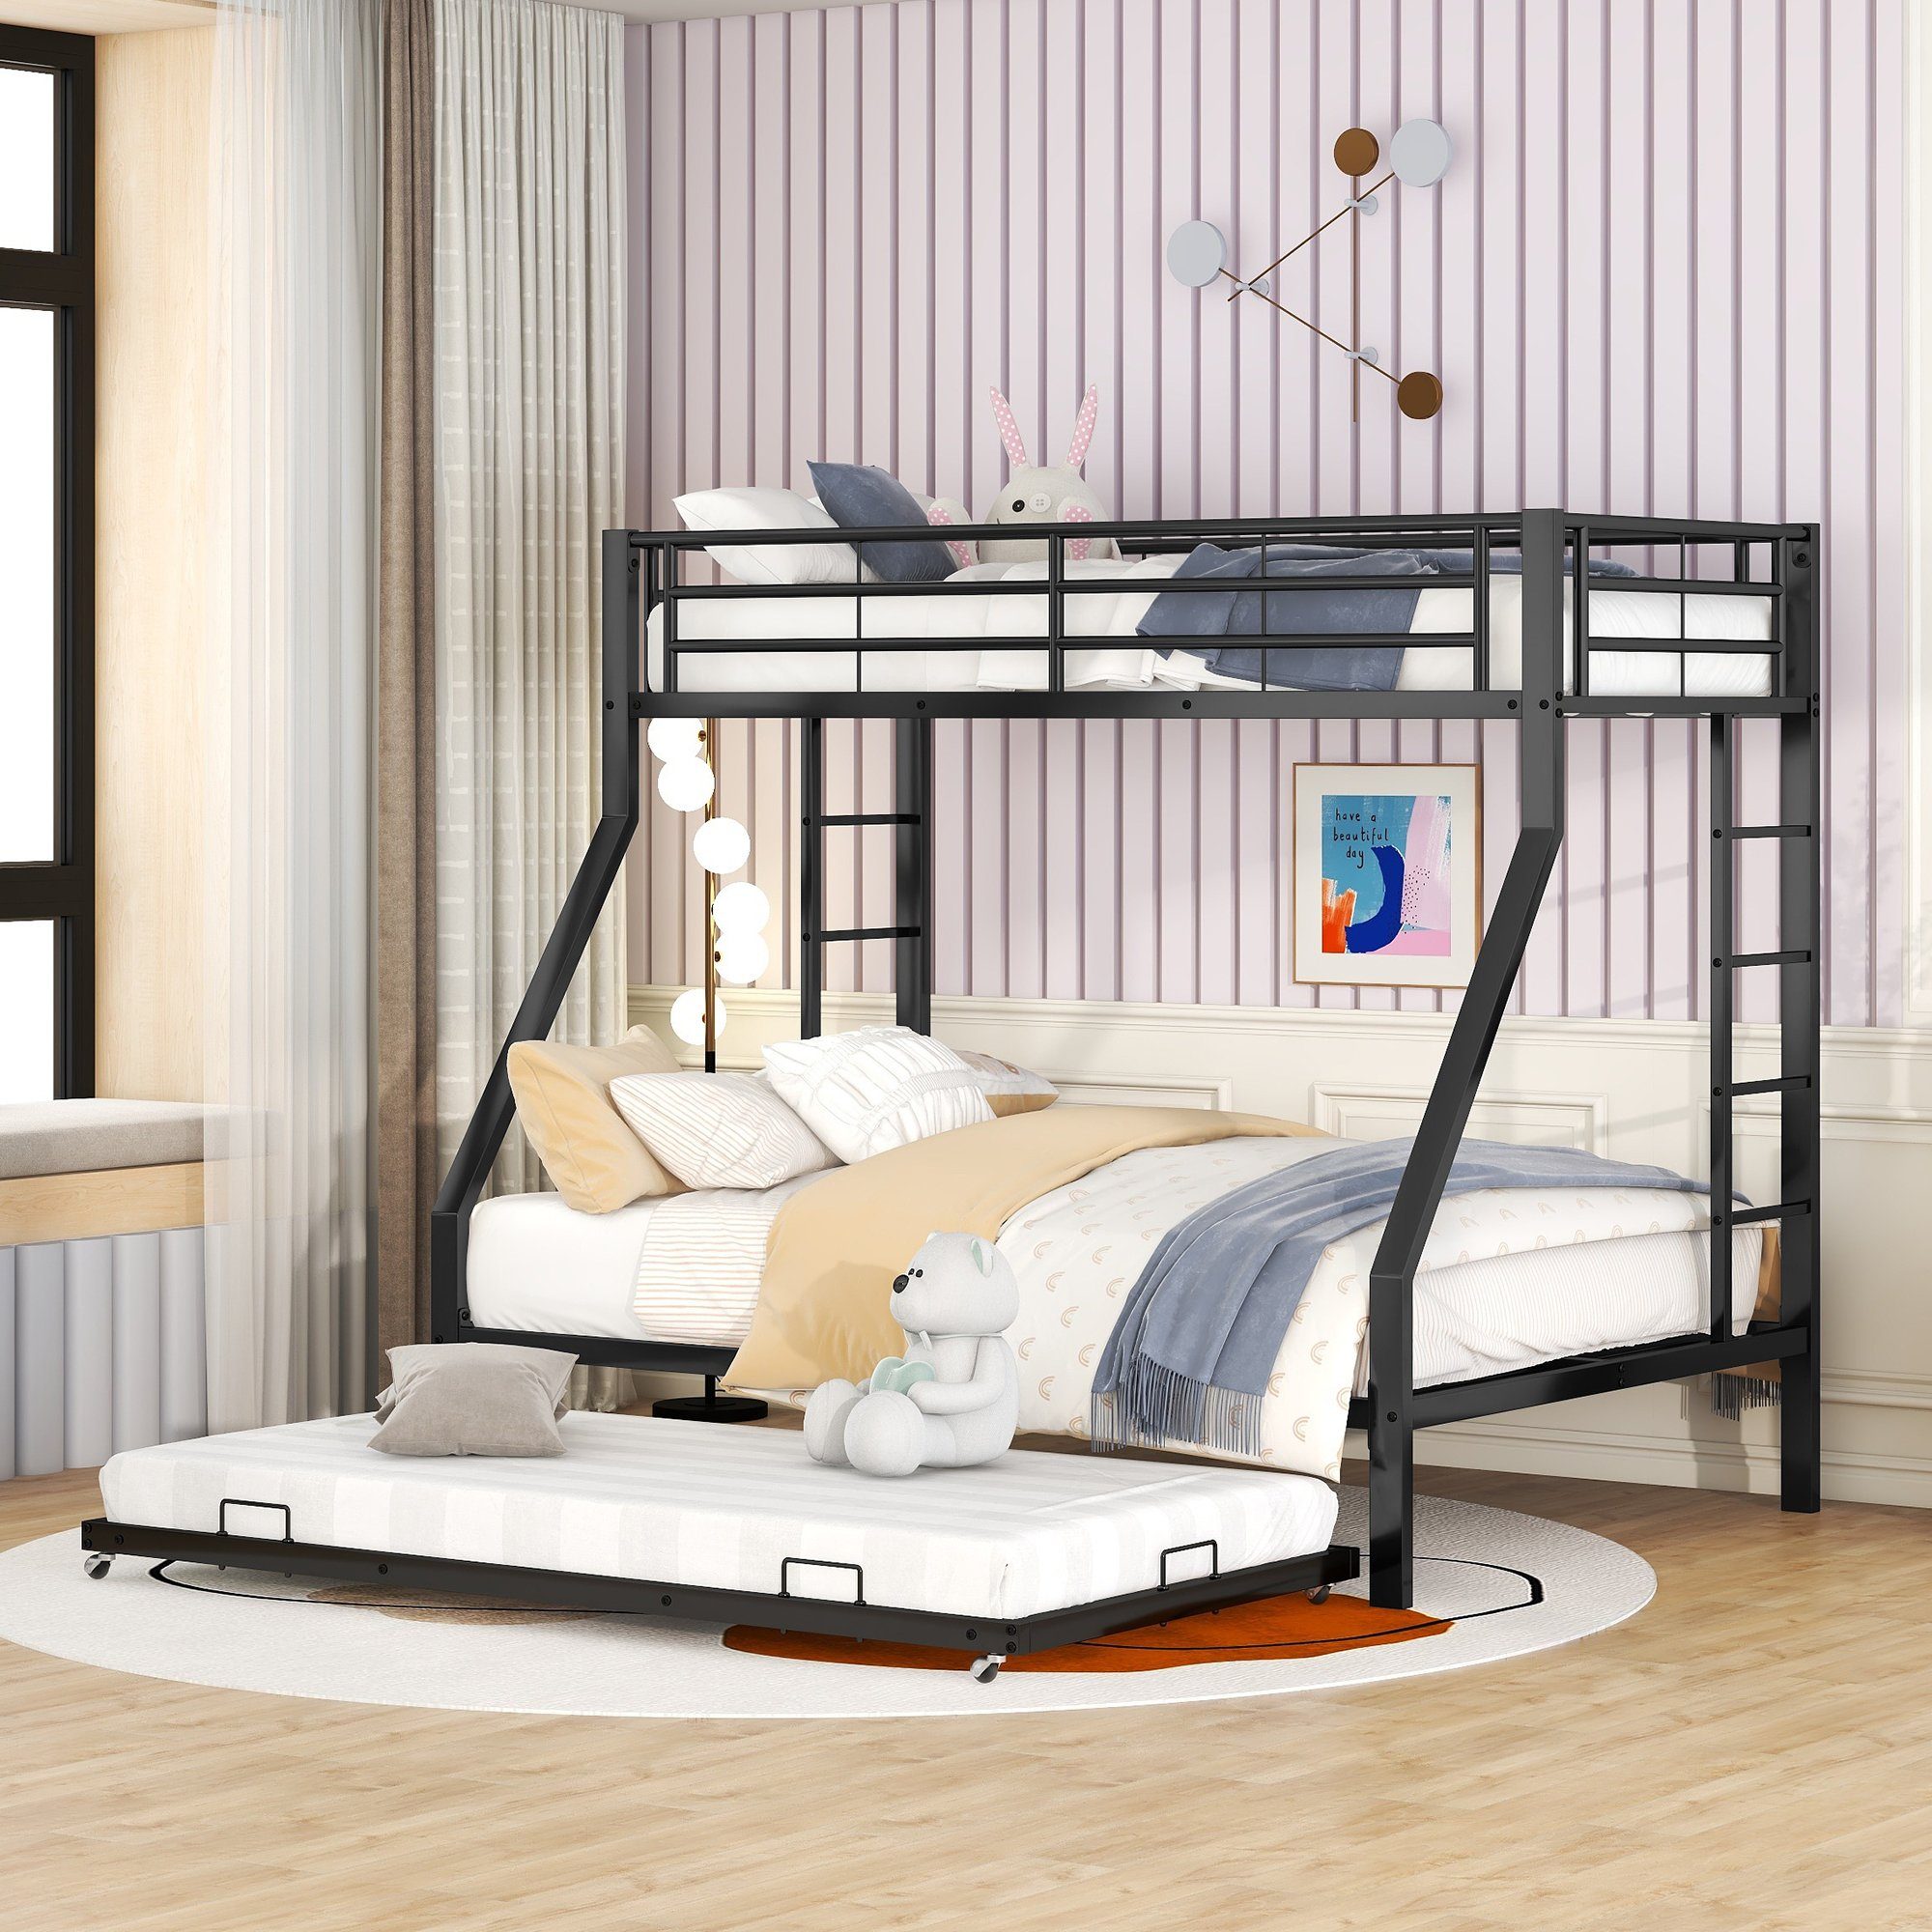 REDOM Etagenbett Kinderbett, Metallbett mit ausziehbarem Bett (Jugendliche, Erwachsene, einfach zu montieren, 90(140)x200cm, mit Leiter auf beiden Seiten für Kinder), Matratze nicht enthalten schwarz